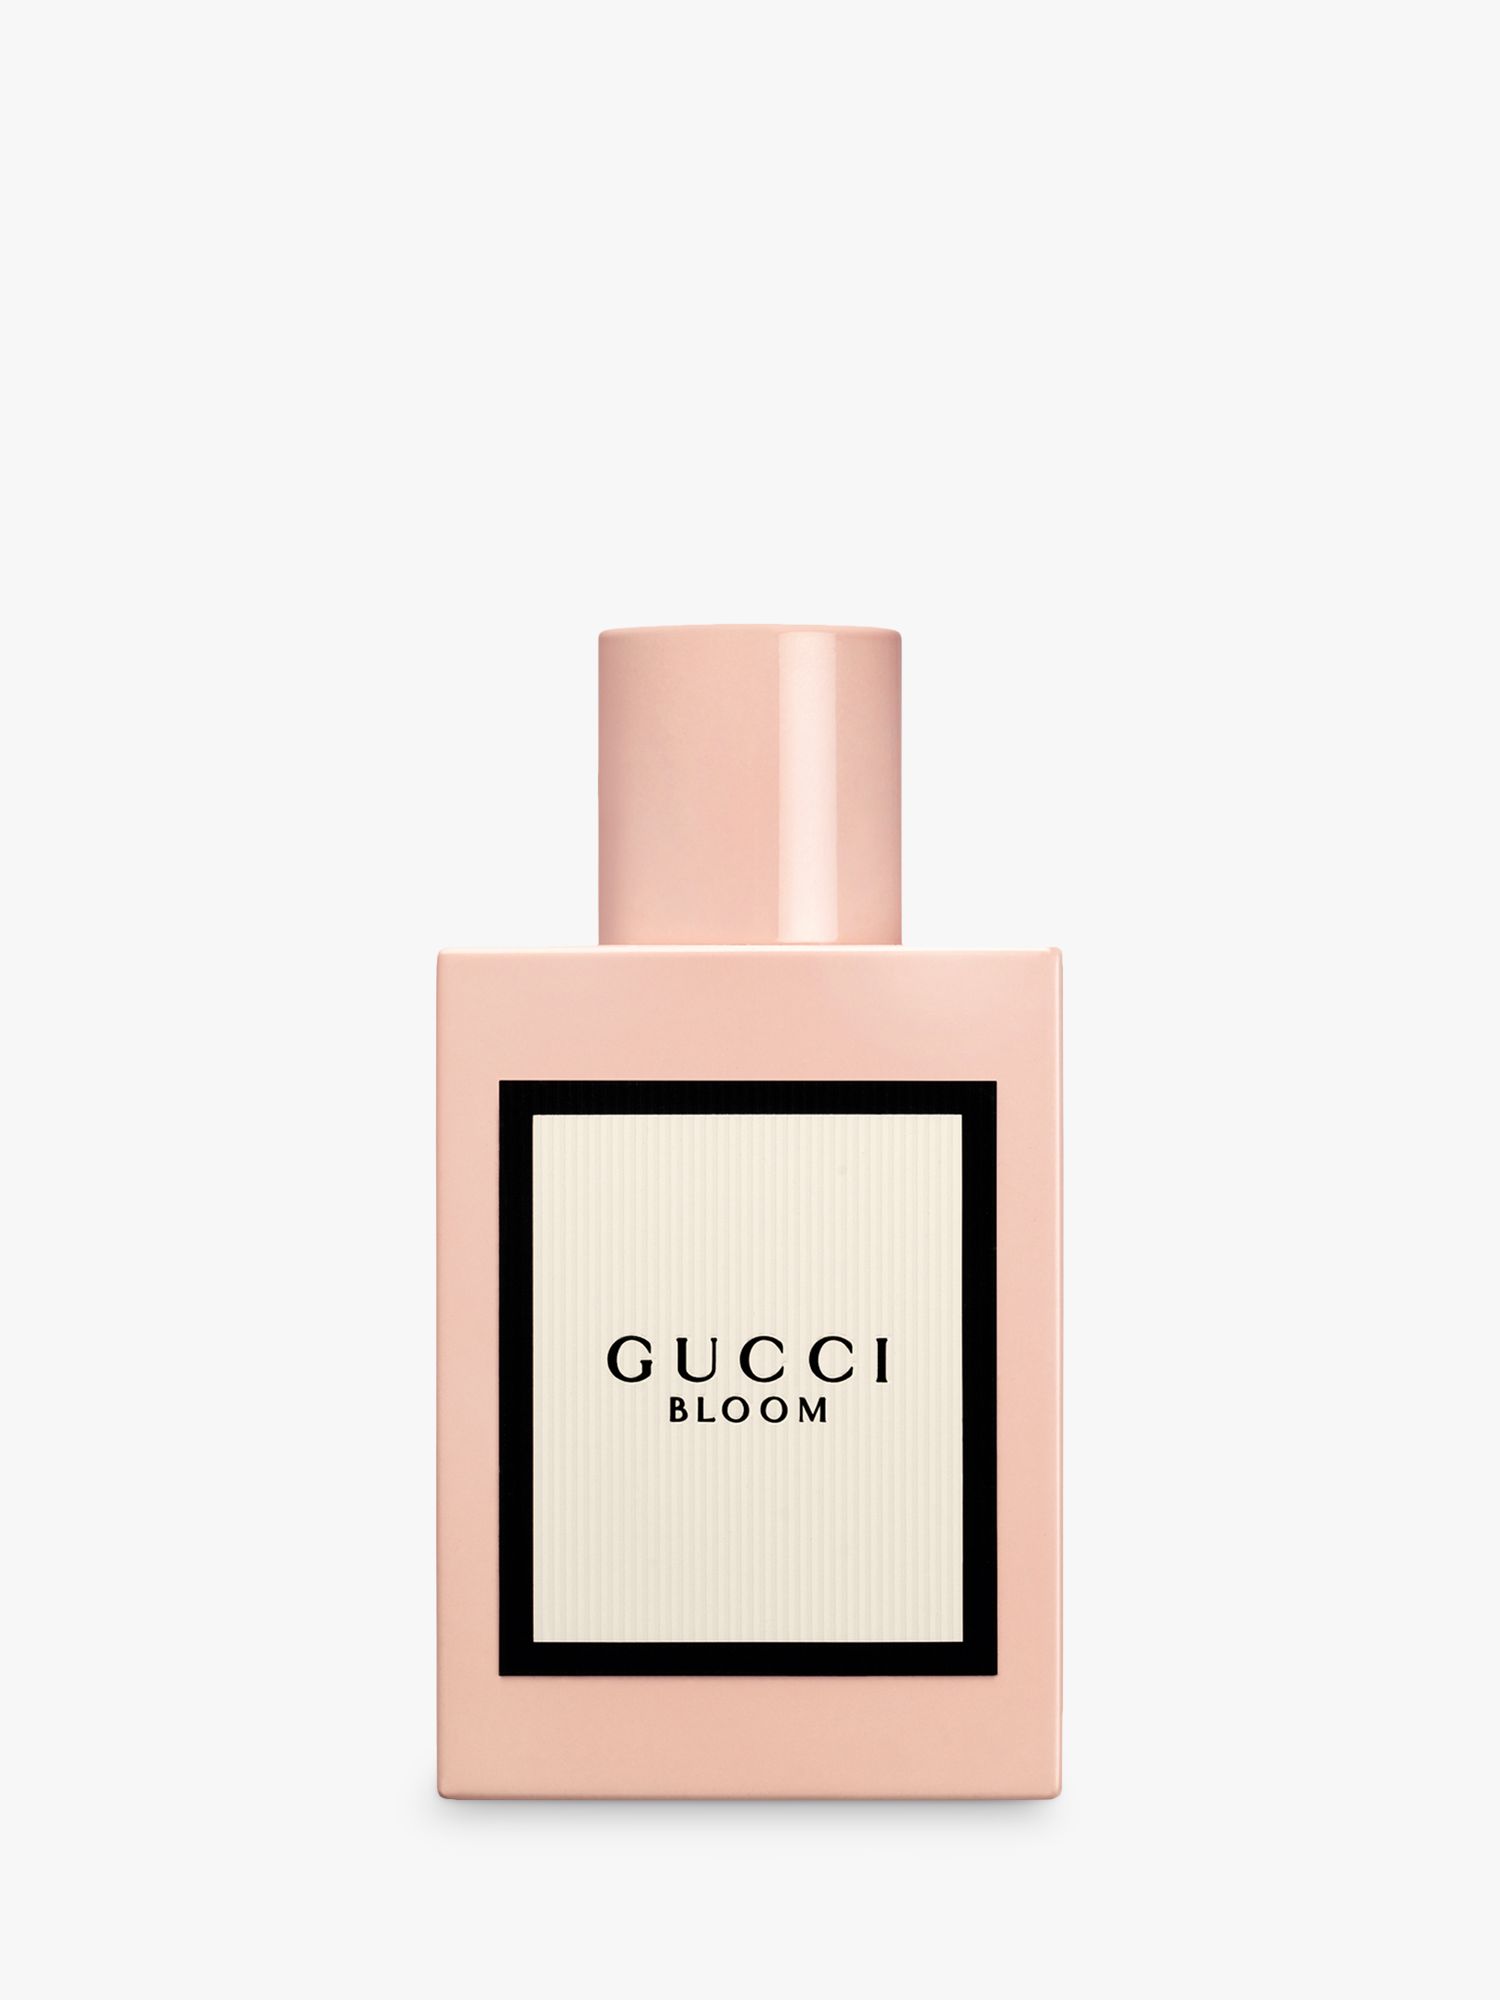 Gucci Bloom Eau Parfum